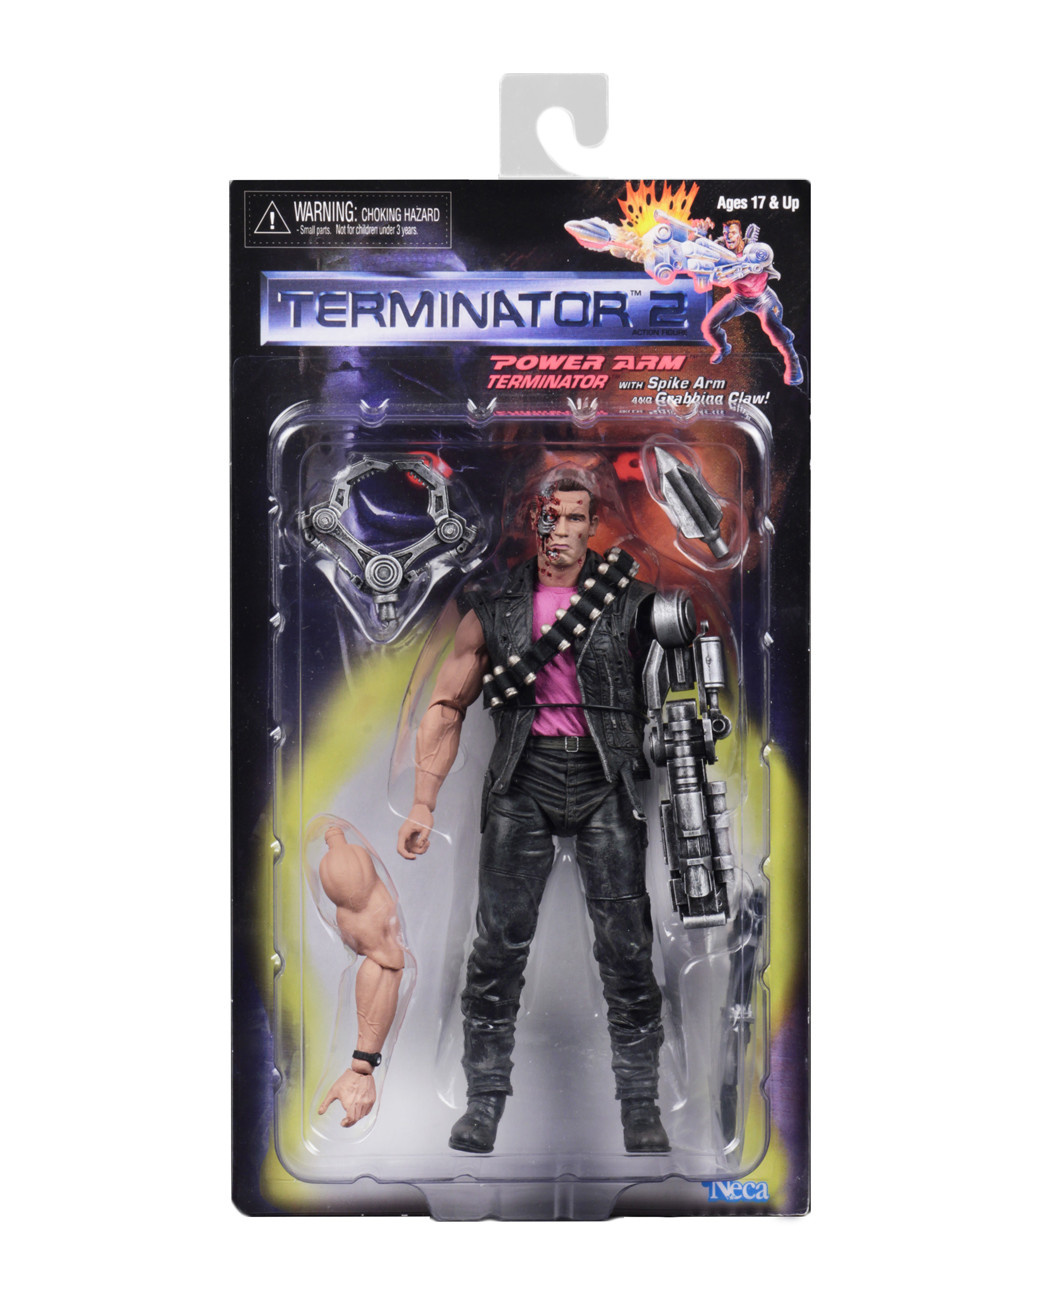 Power Arm Terminator w/Spike Arm \u0026 